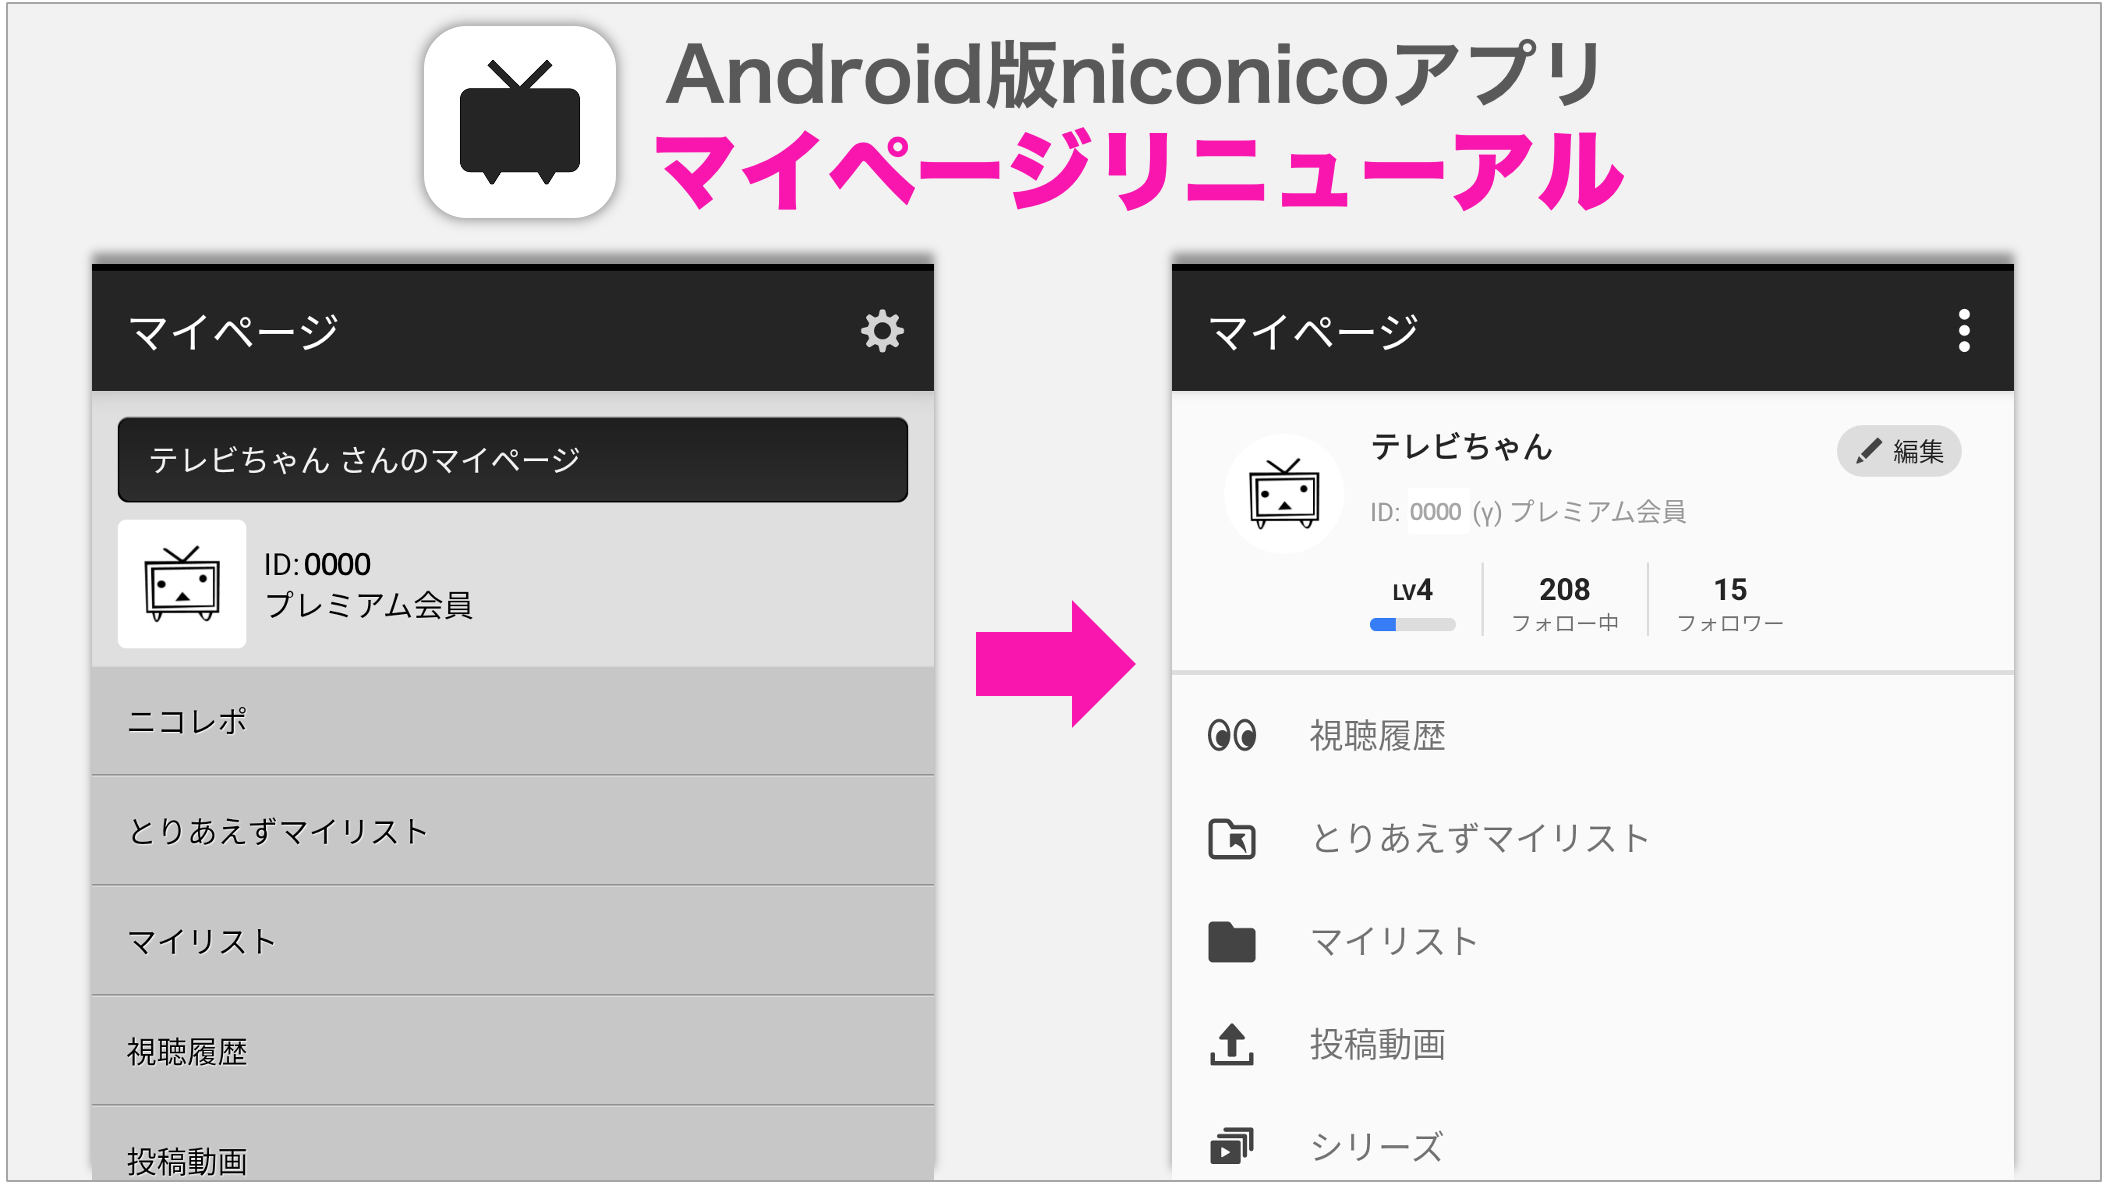 マイページをリニューアルしました Android版niconicoアプリ ニコニコインフォ